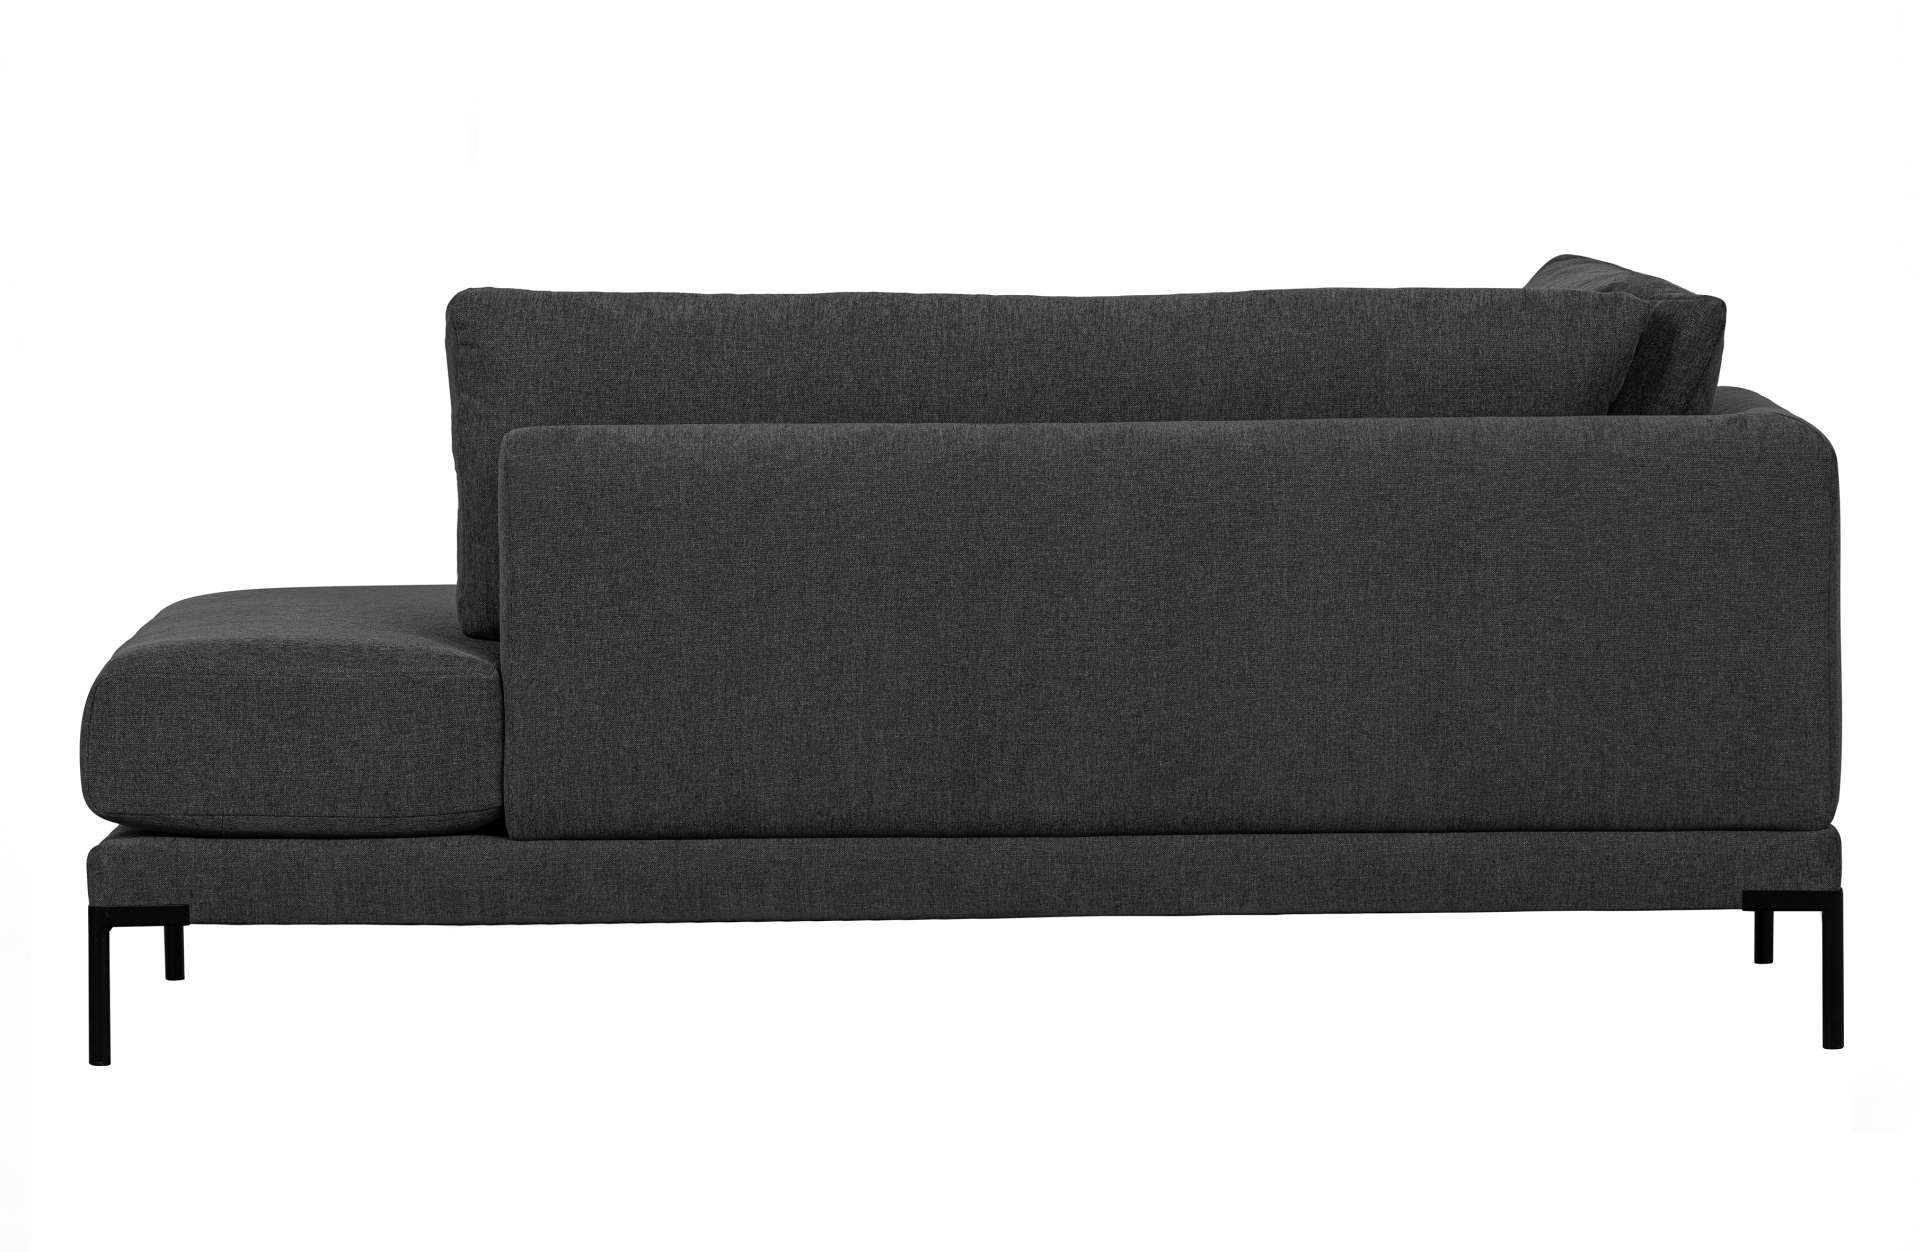 Das Modulsofa Couple Lounge überzeugt mit seinem modernen Design. Das Lounge Element mit der Ausführung Rechts wurde aus Melange Stoff gefertigt, welcher einen einen dunkelgrauen Farbton besitzen. Das Gestell ist aus Metall und hat eine schwarze Farbe. Da